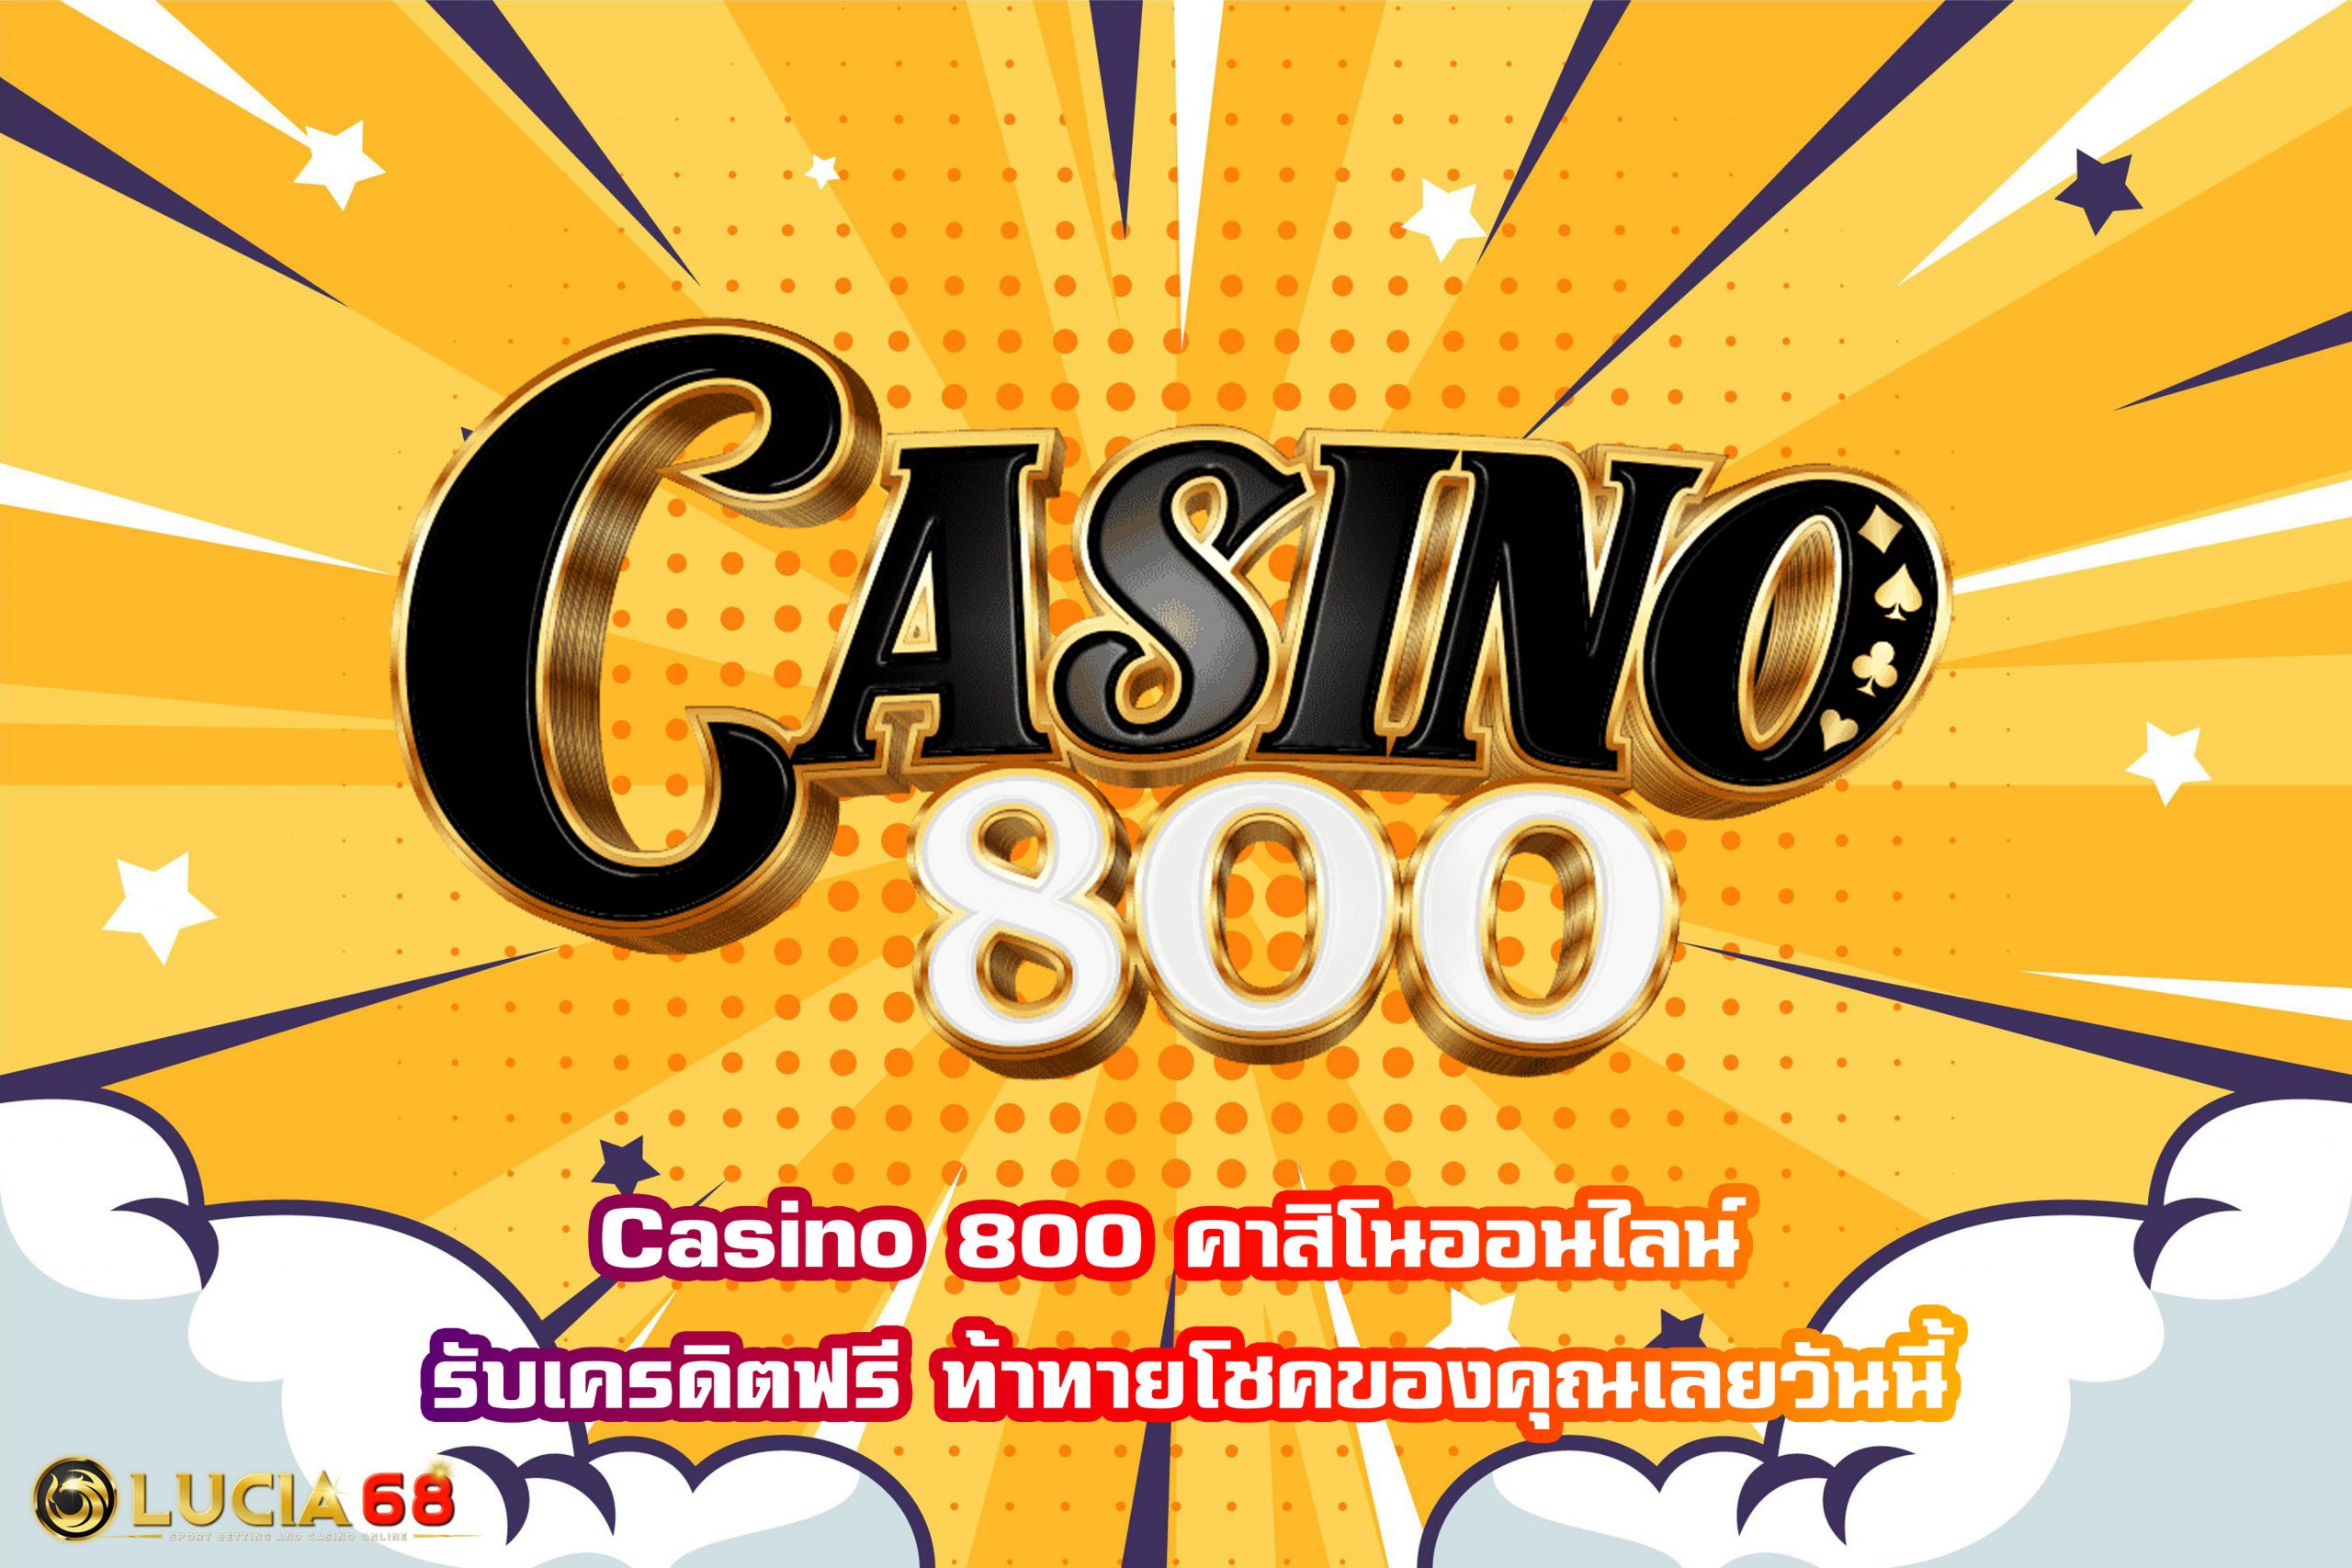 Casino 800 คาสิโนออนไลน์ รับเครดิตฟรี ท้าทายโชคของคุณเลยวันนี้